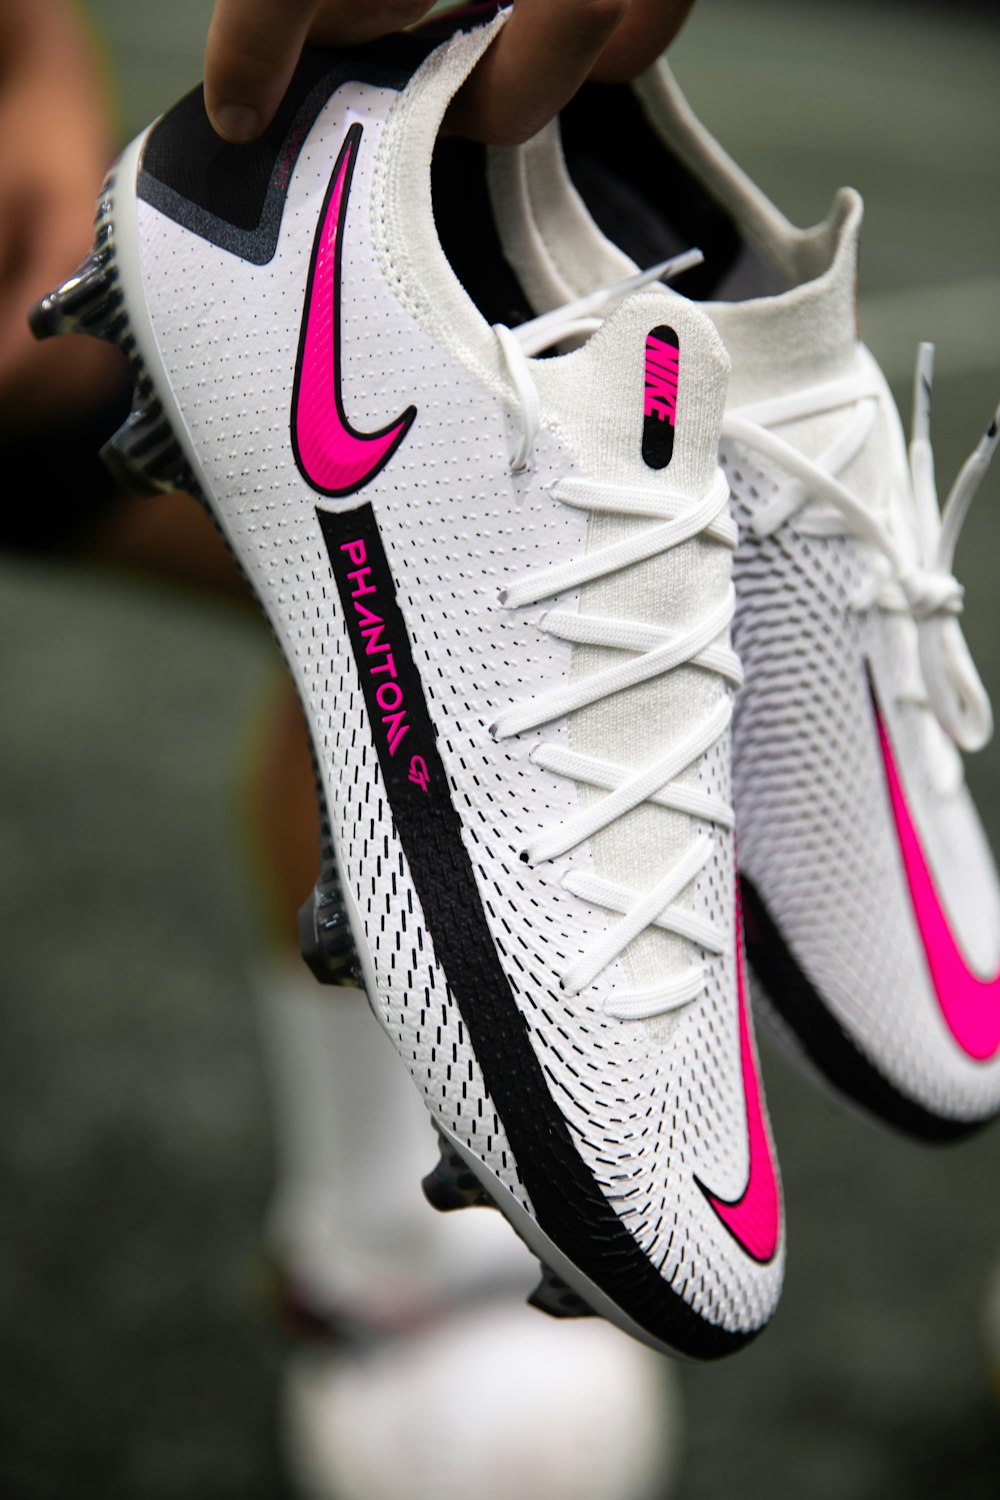 gray and white nike athletic shoe photo – Free Soccer Image on Unsplash